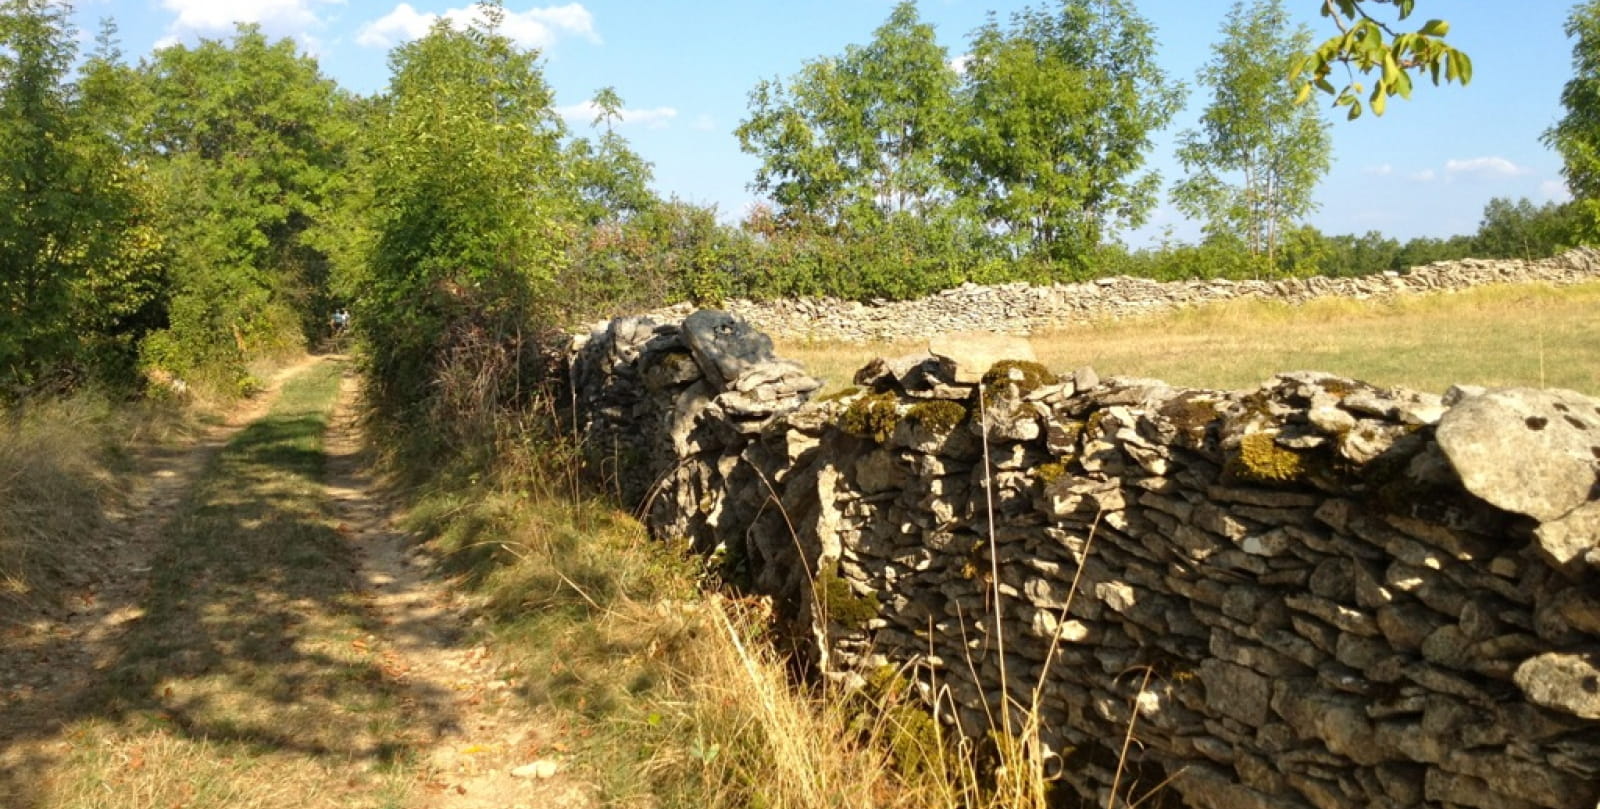 Lugagnac: camino de pared baja en piedras secas